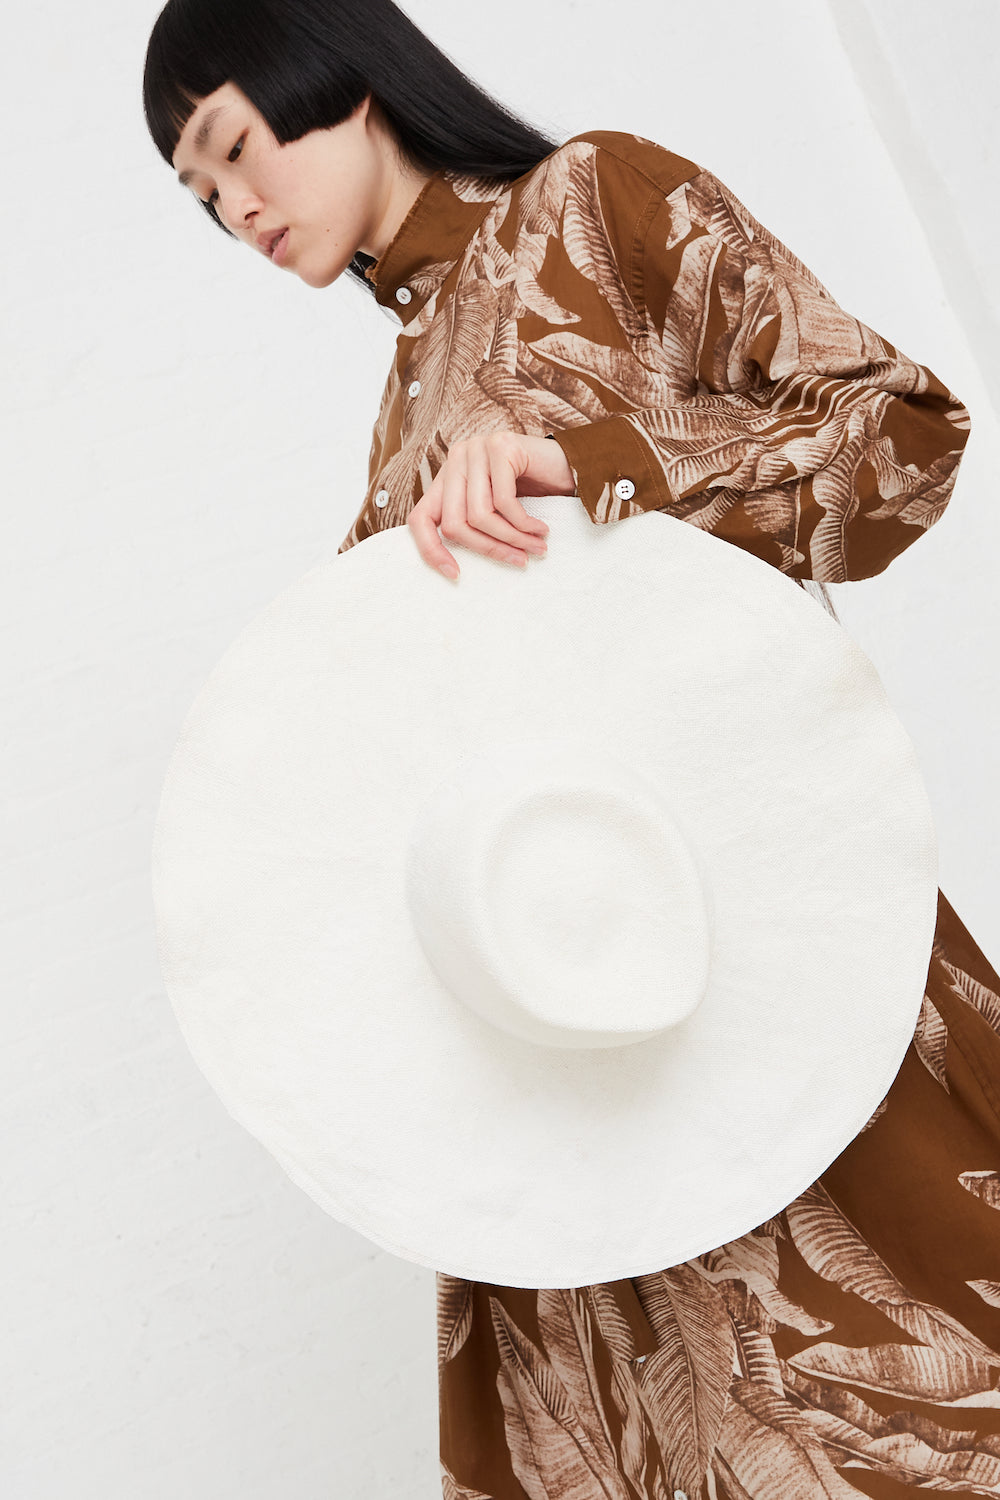 Reinhard Plank - Nana Flower Viscose Hat in White full front view on model.